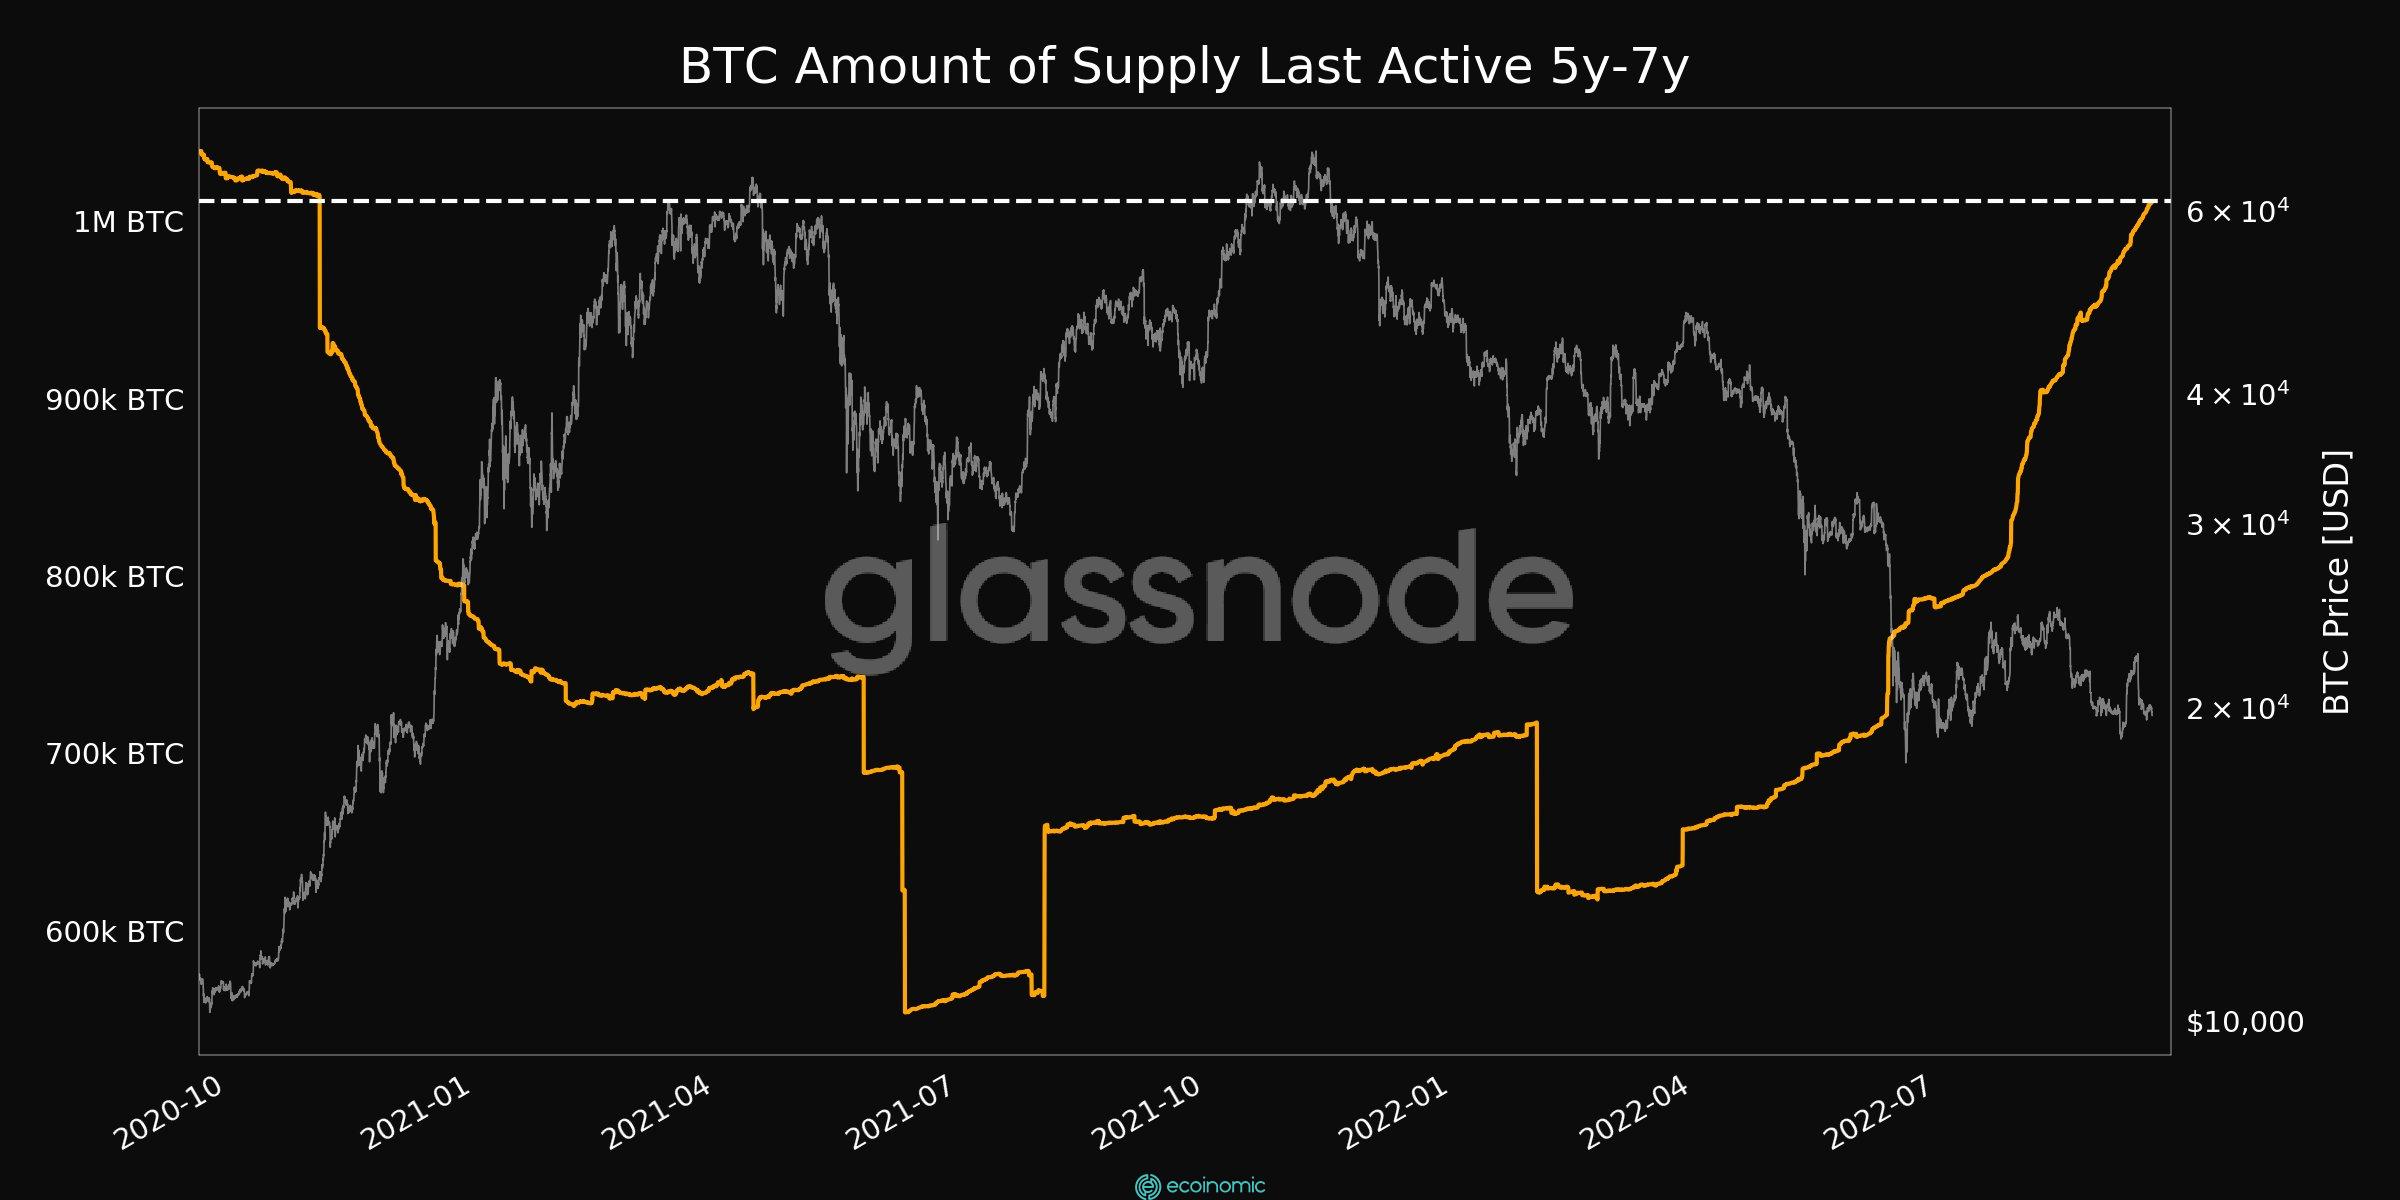 Biểu đồ cung cấp bitcoin hoạt động lần cuối cách đây 5-7 năm. Nguồn: Glassnode / Twitter